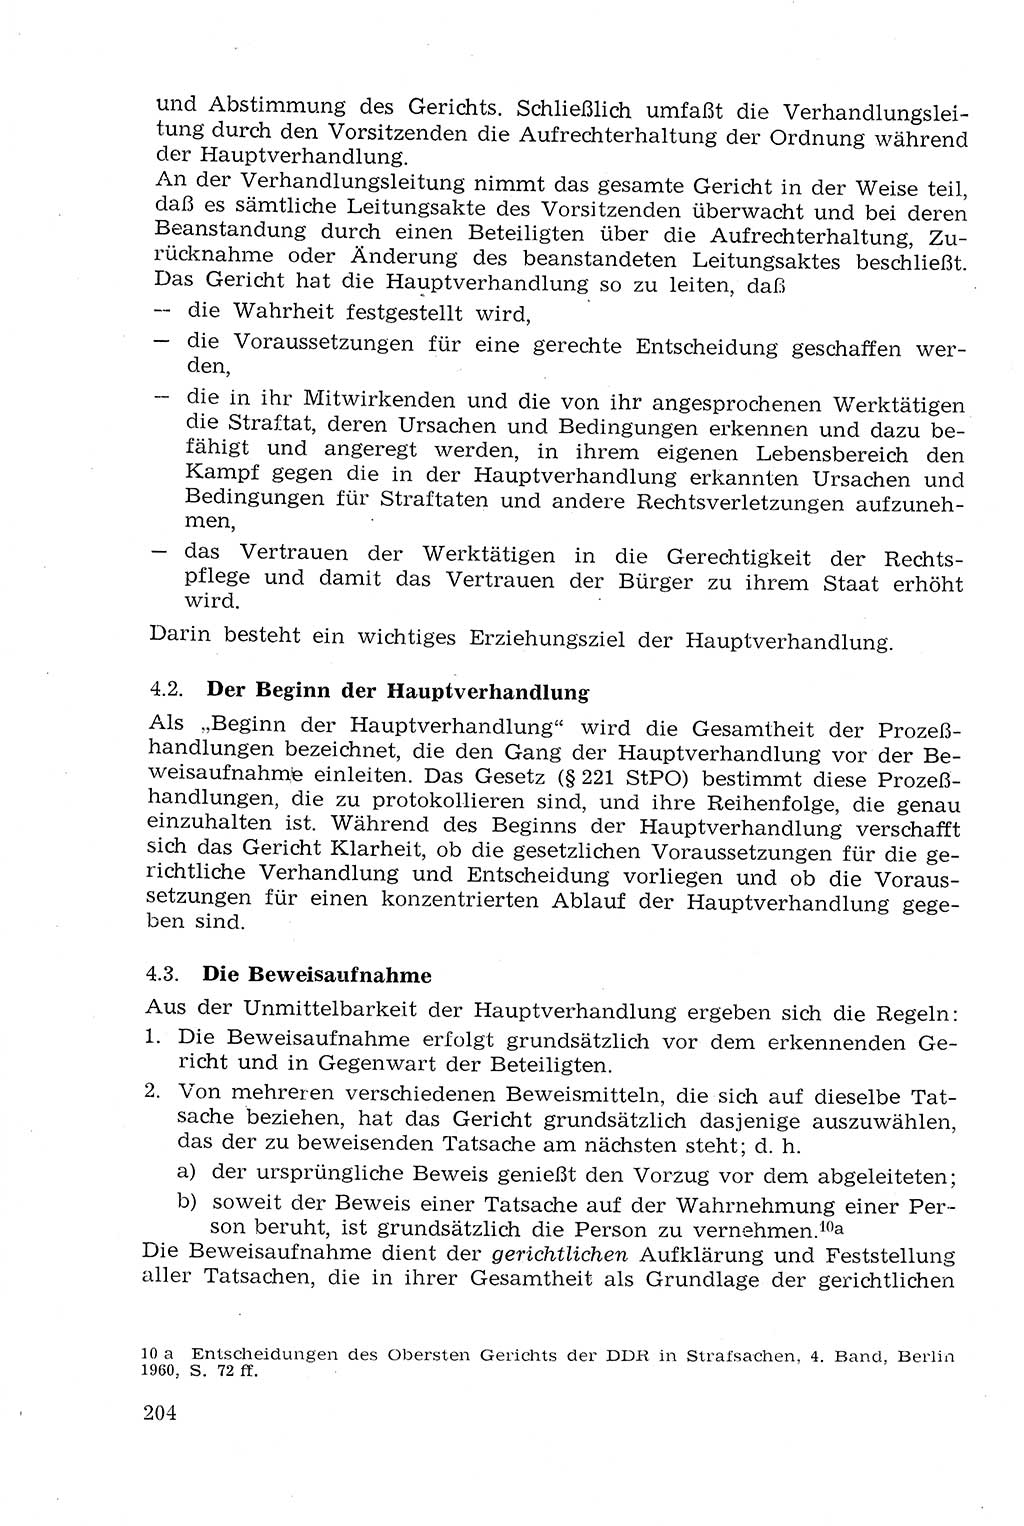 Strafprozeßrecht der DDR (Deutsche Demokratische Republik), Lehrmaterial 1969, Seite 204 (Strafprozeßr. DDR Lehrmat. 1969, S. 204)